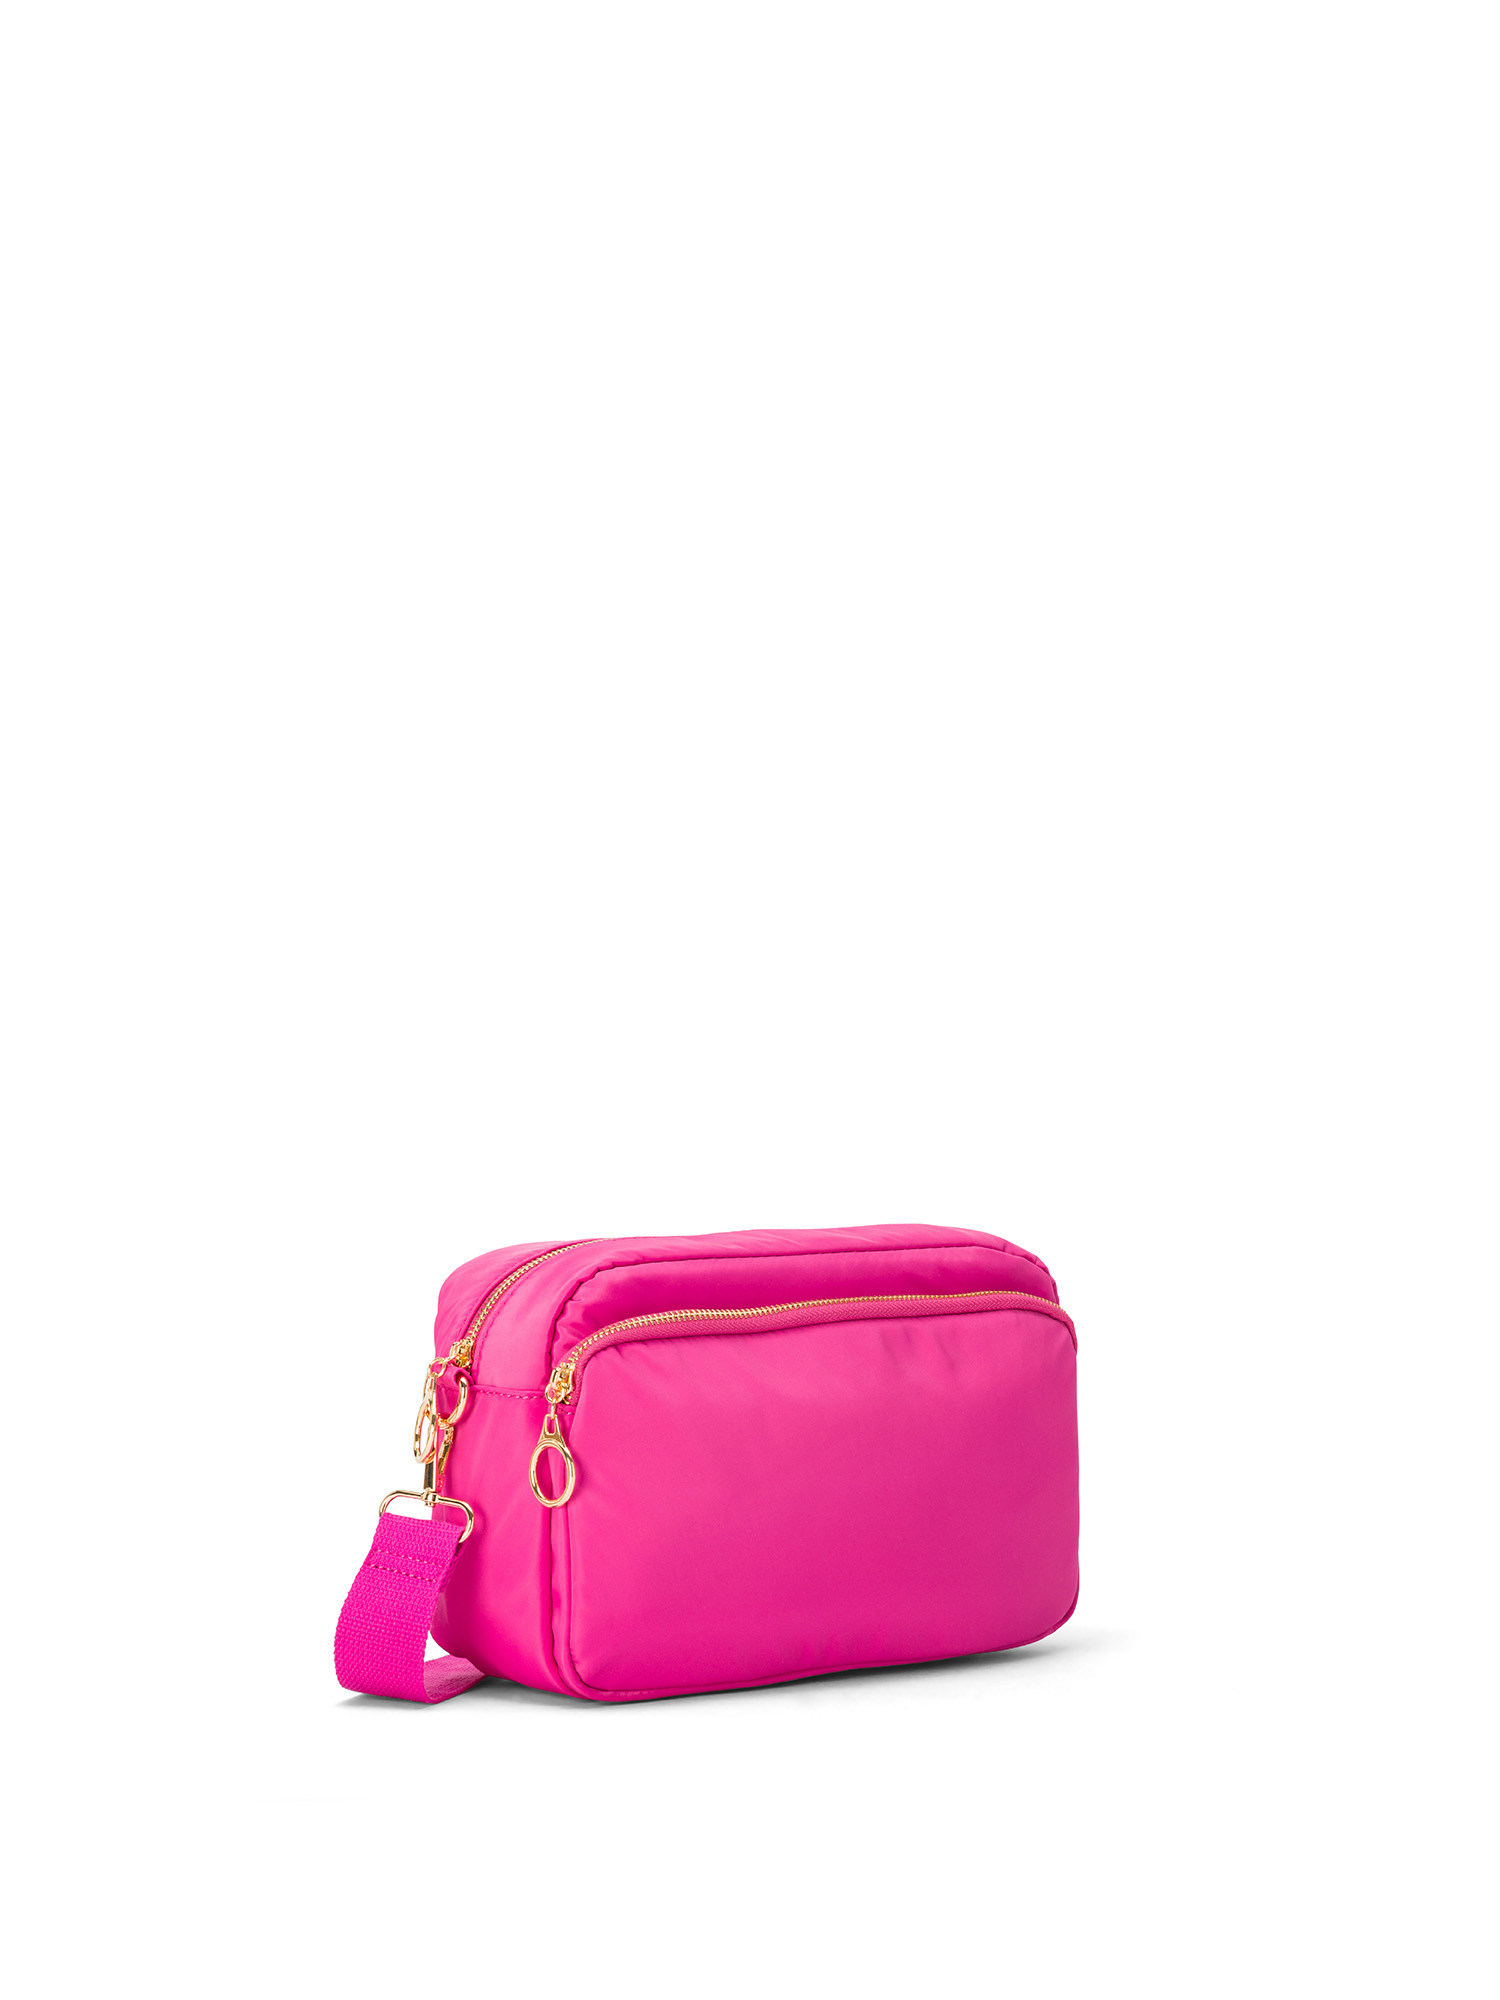 Koan - Shoulder bag, Dark Pink, large image number 1